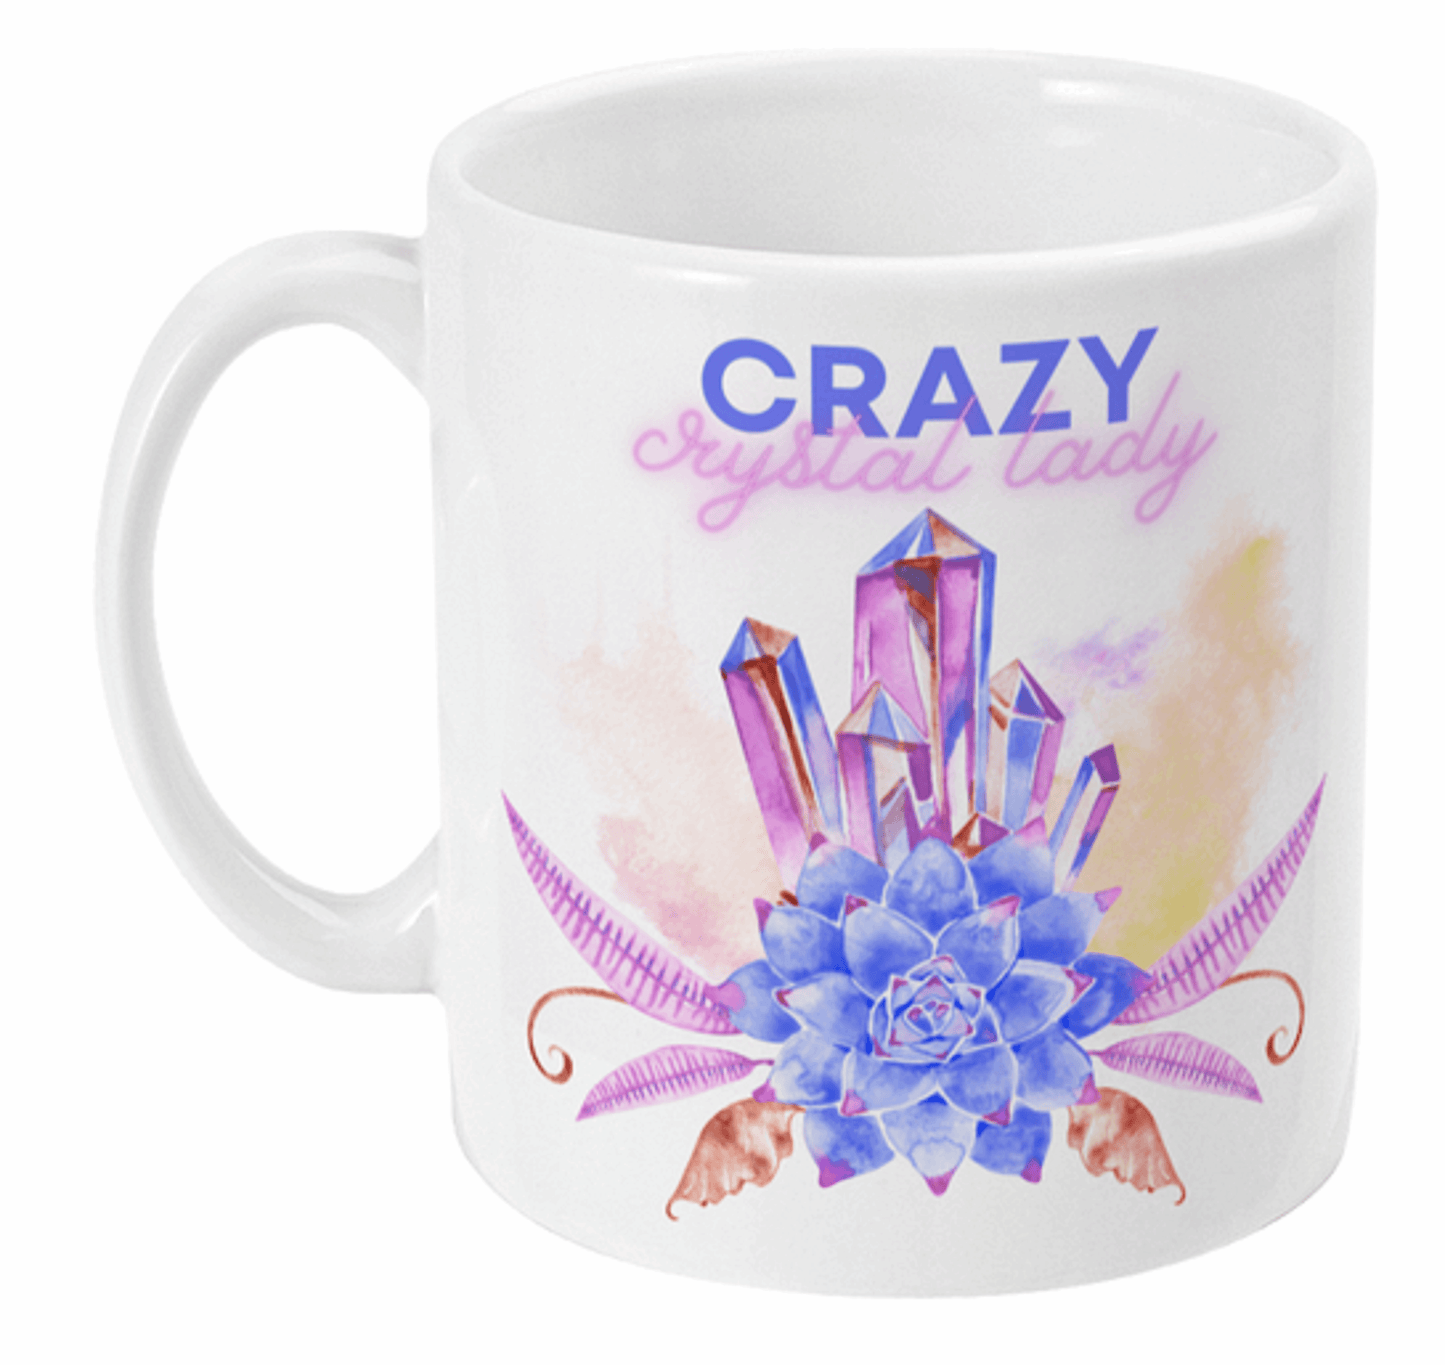  Crazy Crystal Lady Coffee Mug by Free Spirit Accessories sold by Free Spirit Accessories